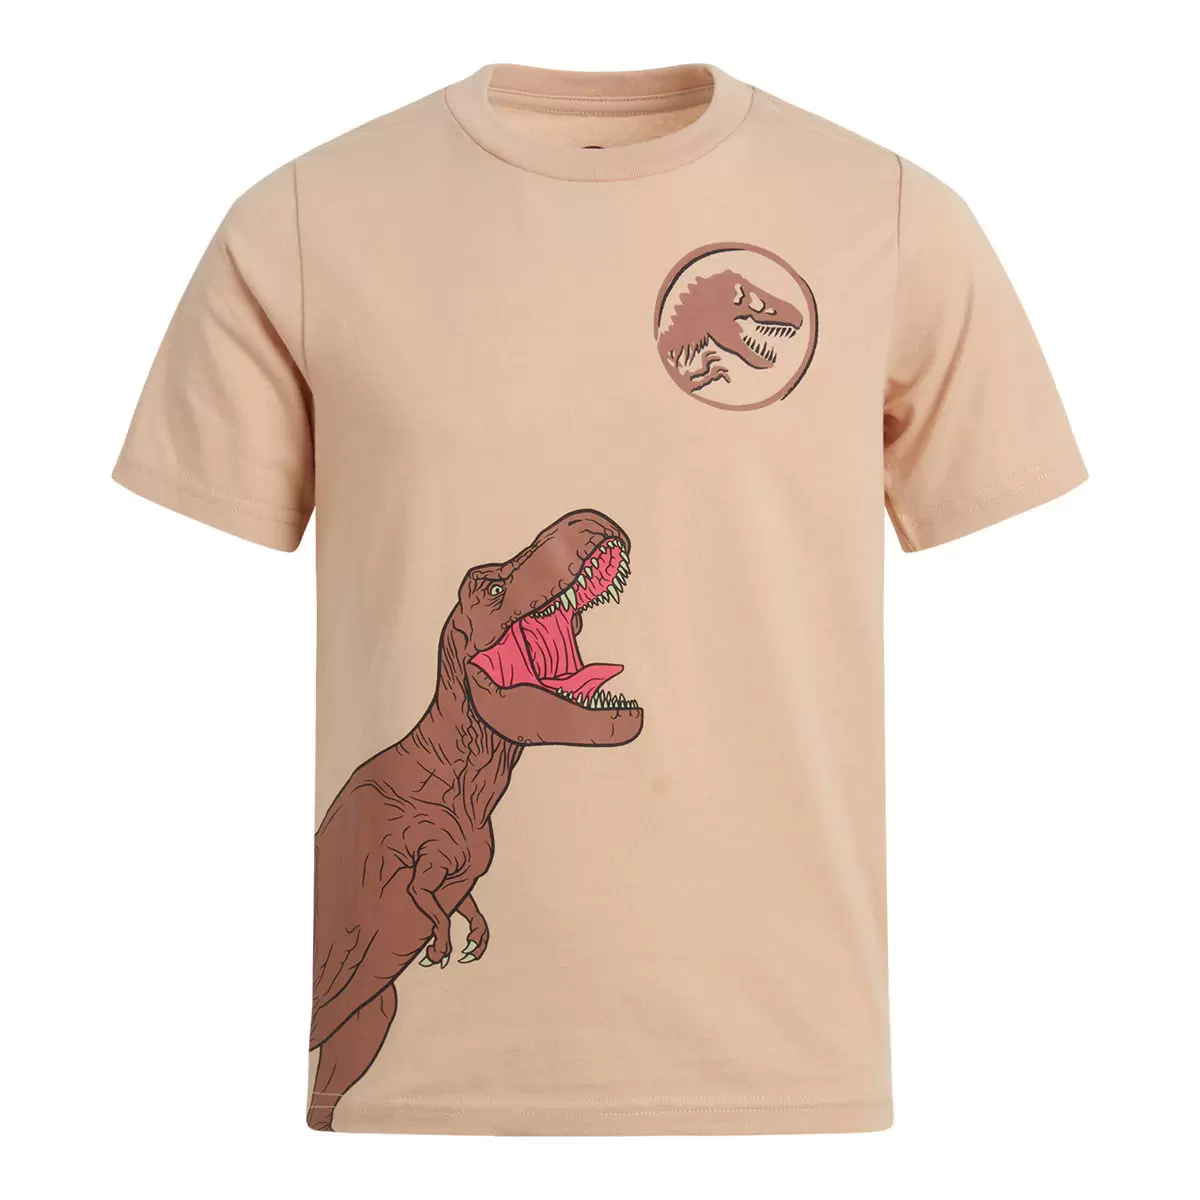 兒童卡通圖案短袖上衣四件組 Jurassic Park 6T